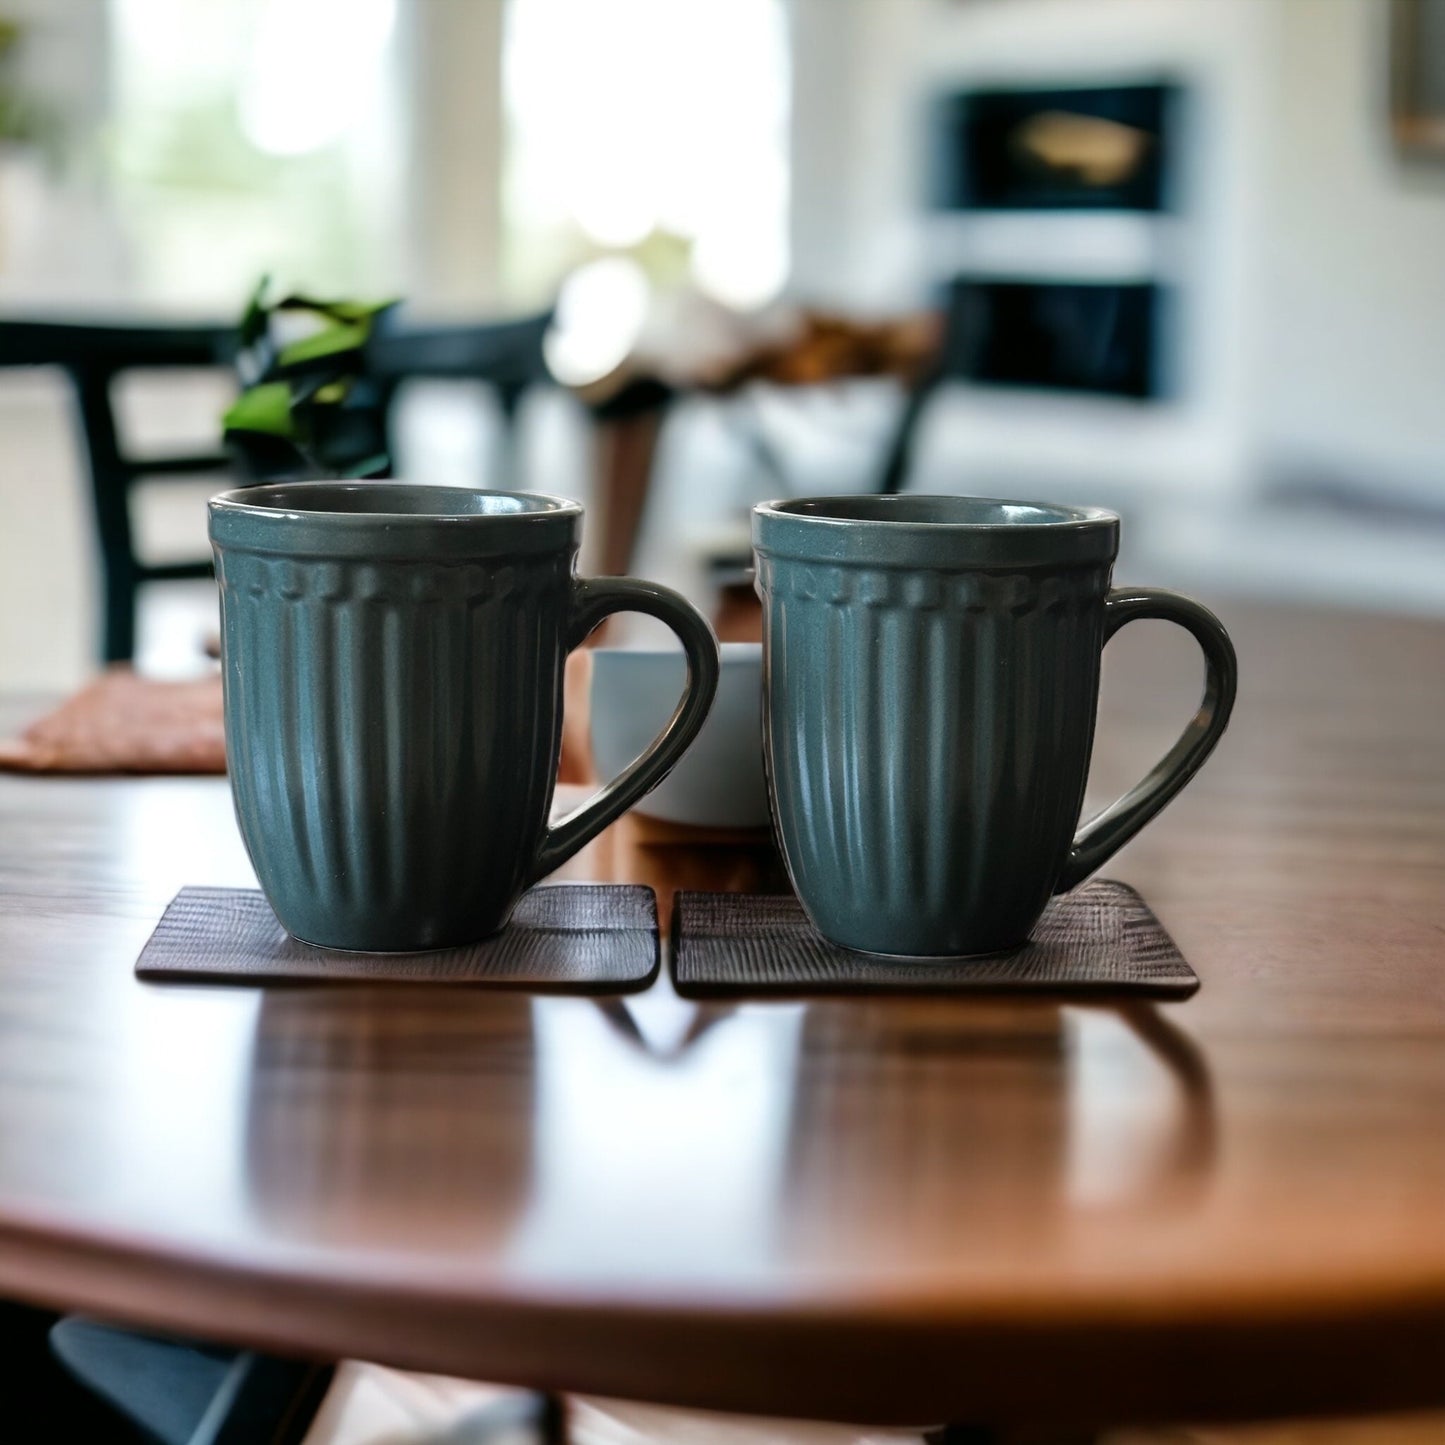 Green vintage mugs - set of two